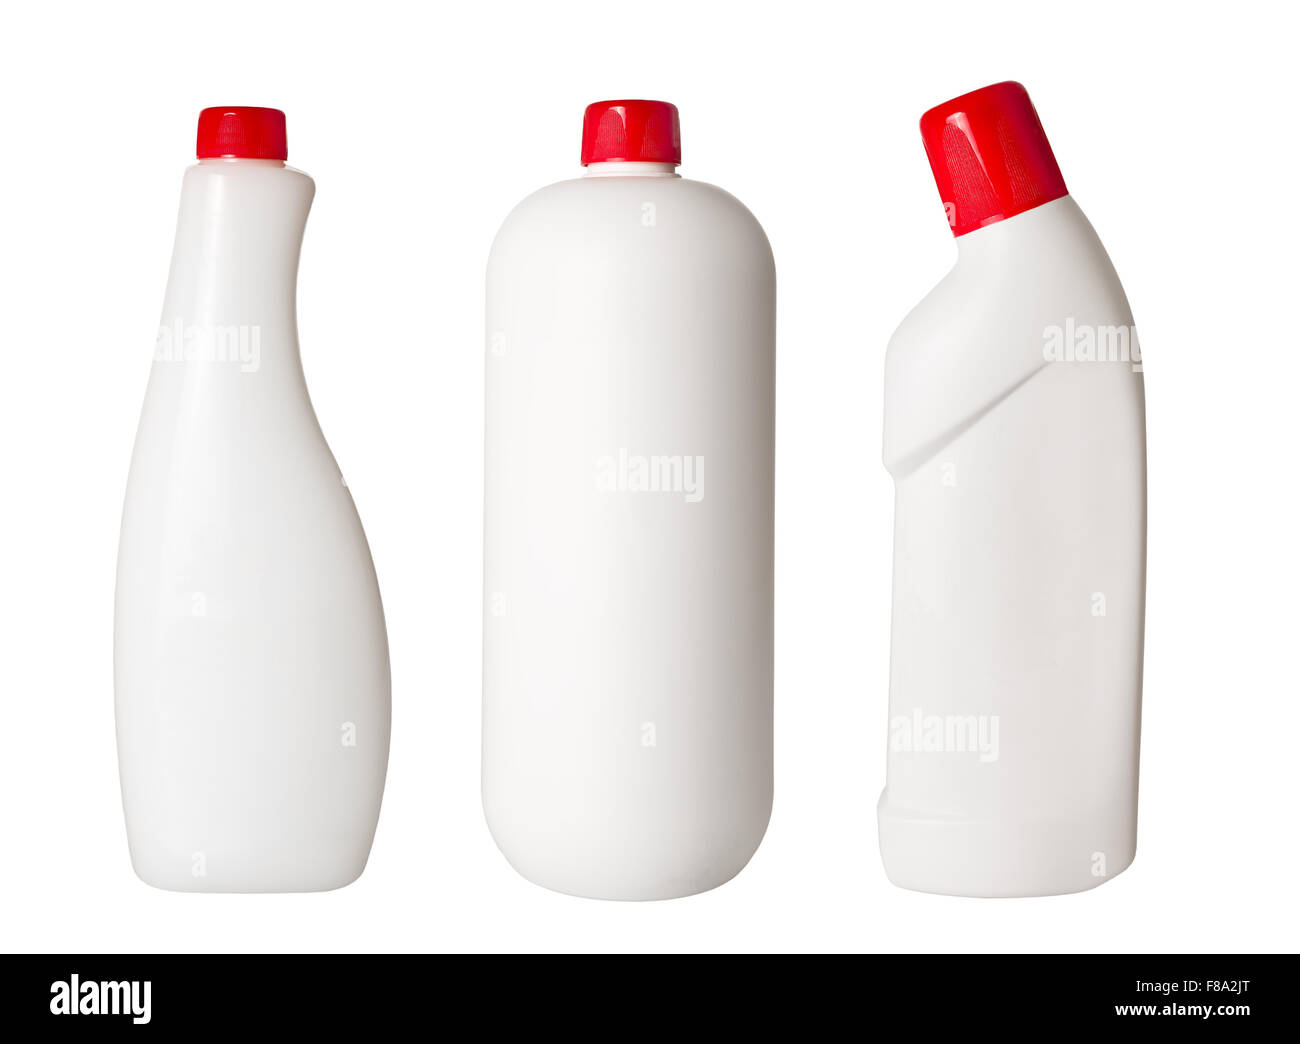 Los recipientes de plástico para detergentes domésticos sobre fondo blanco. Foto de stock